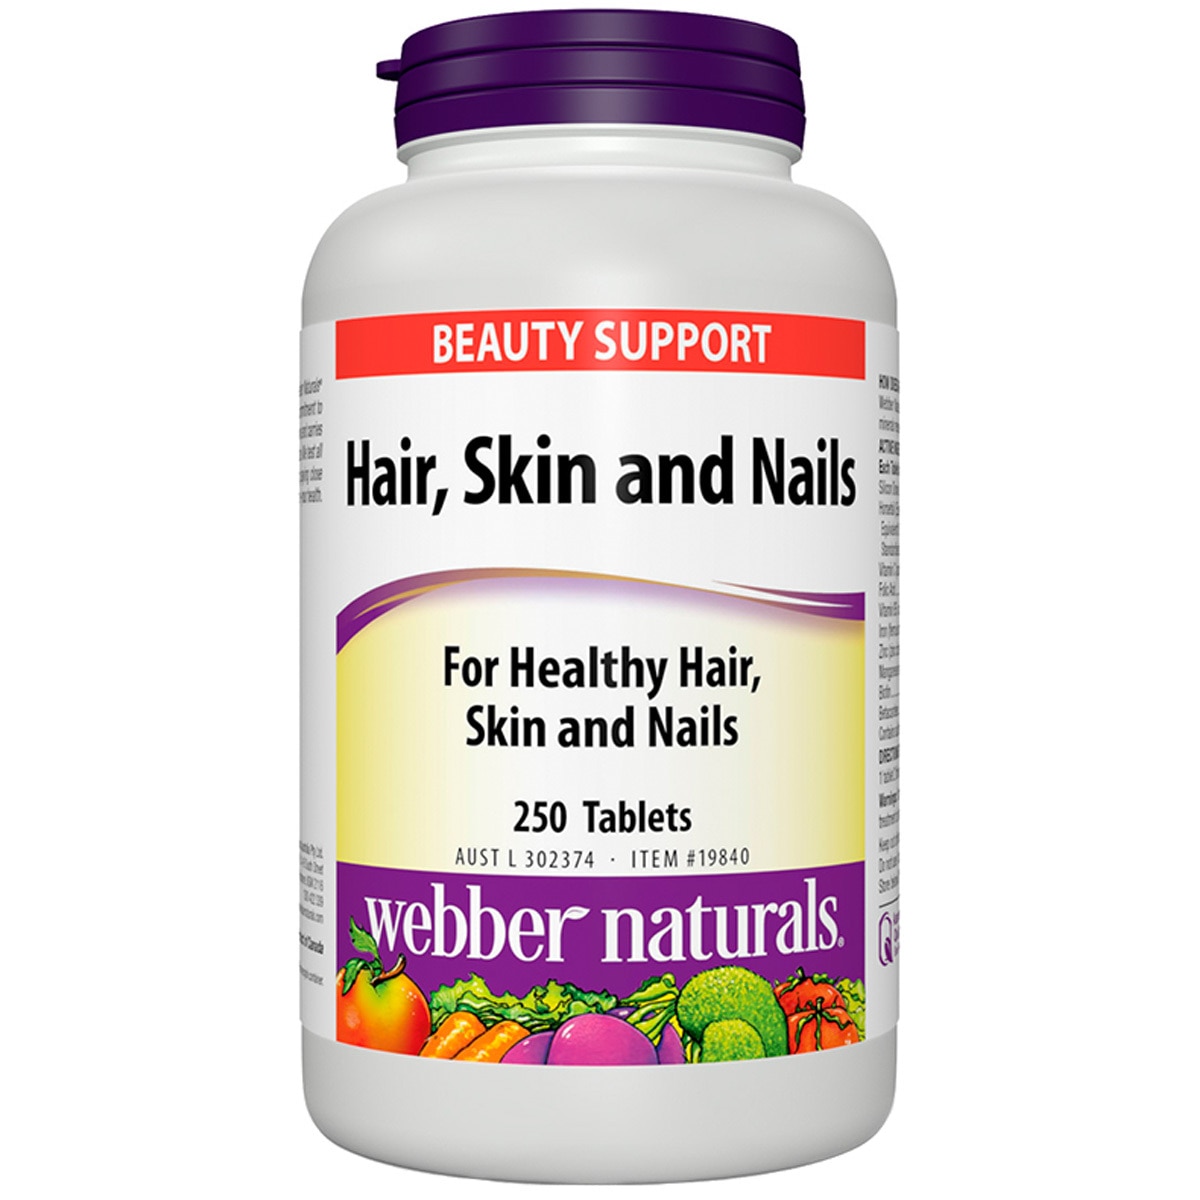 Webber Naturals Hair, Skin and Nails